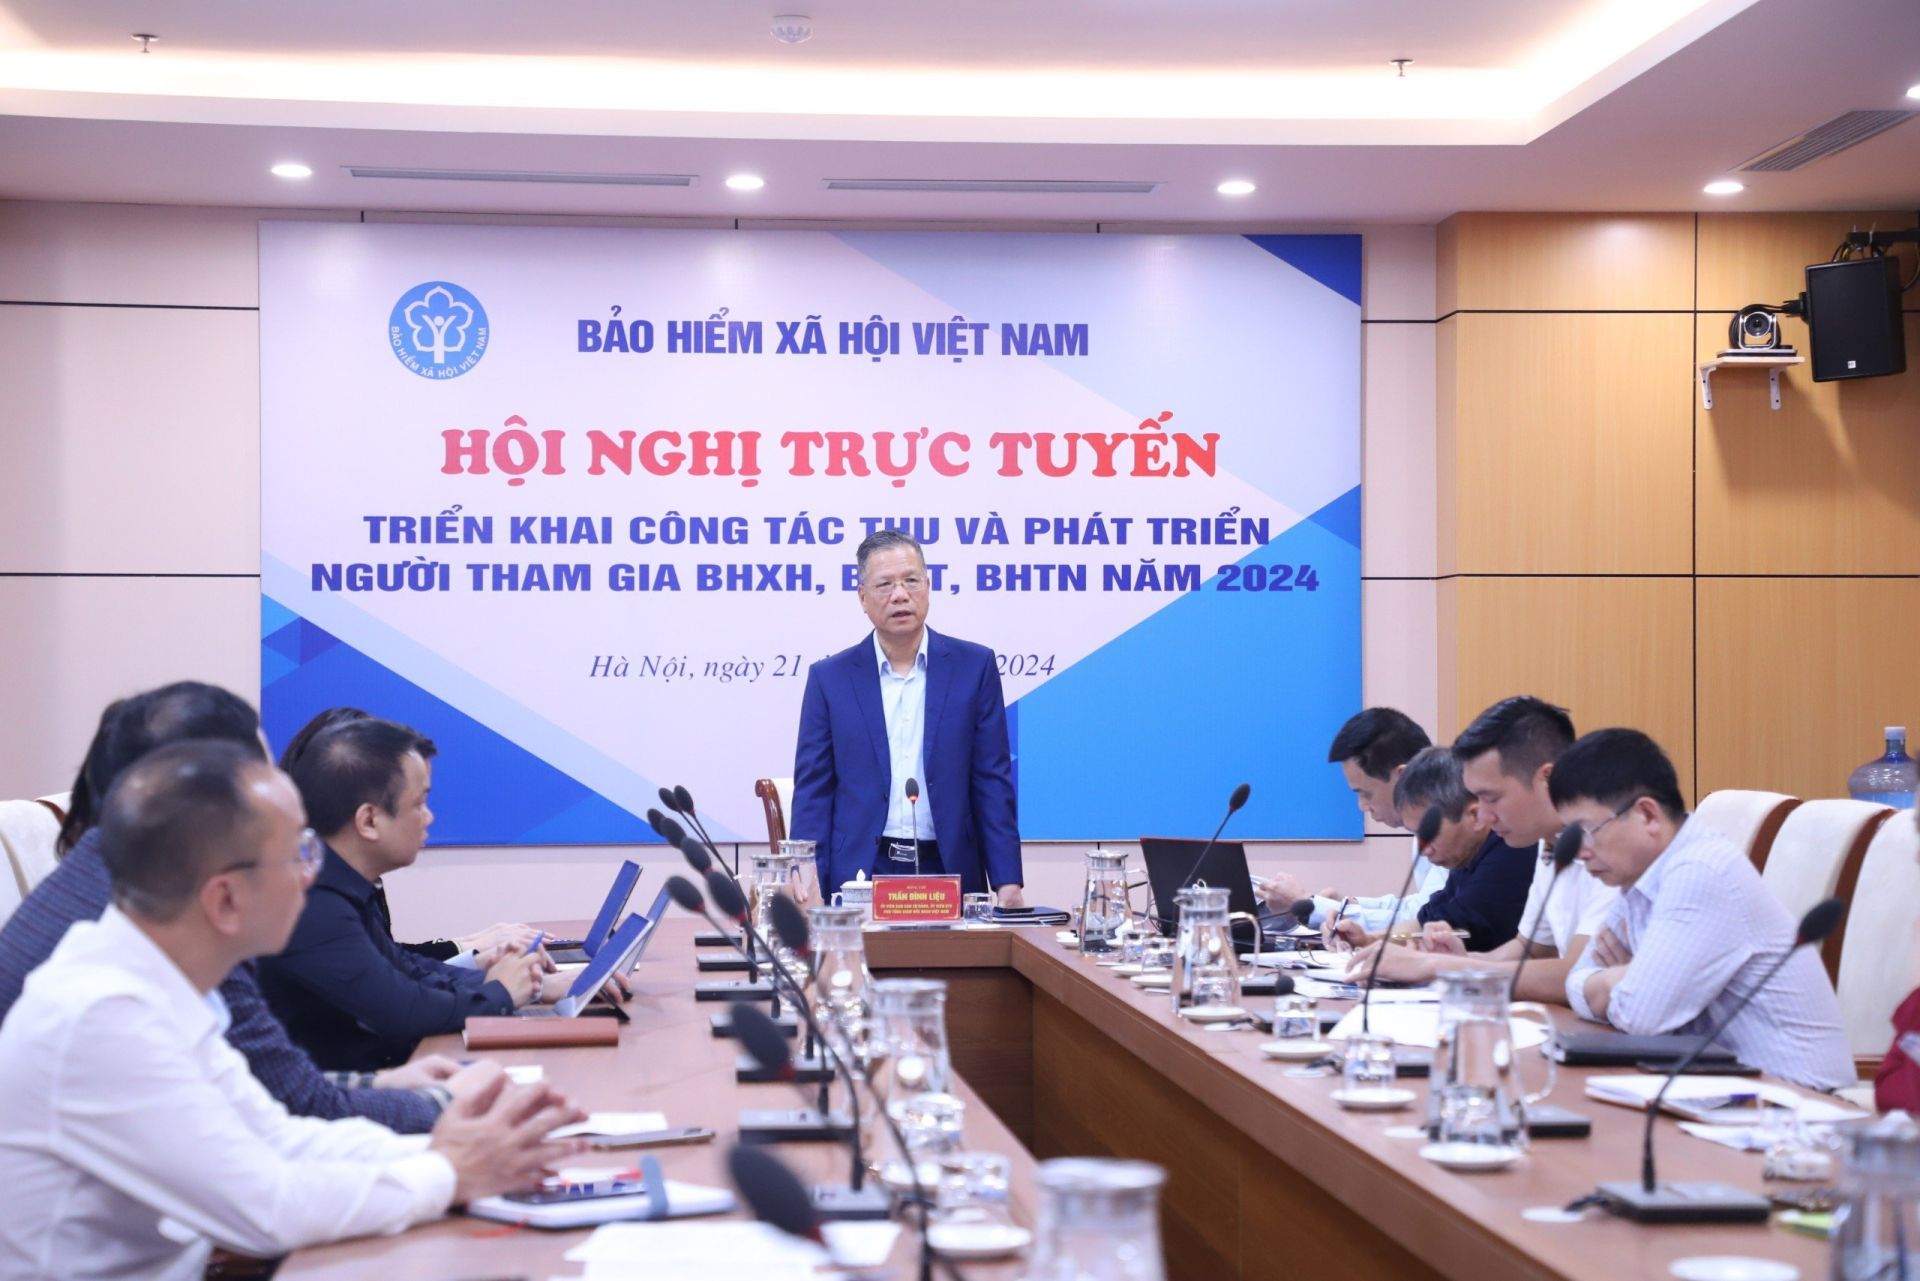 Phó Tổng Giám đốc Trần Đình Liệu chủ trì Hội nghị trực tuyến